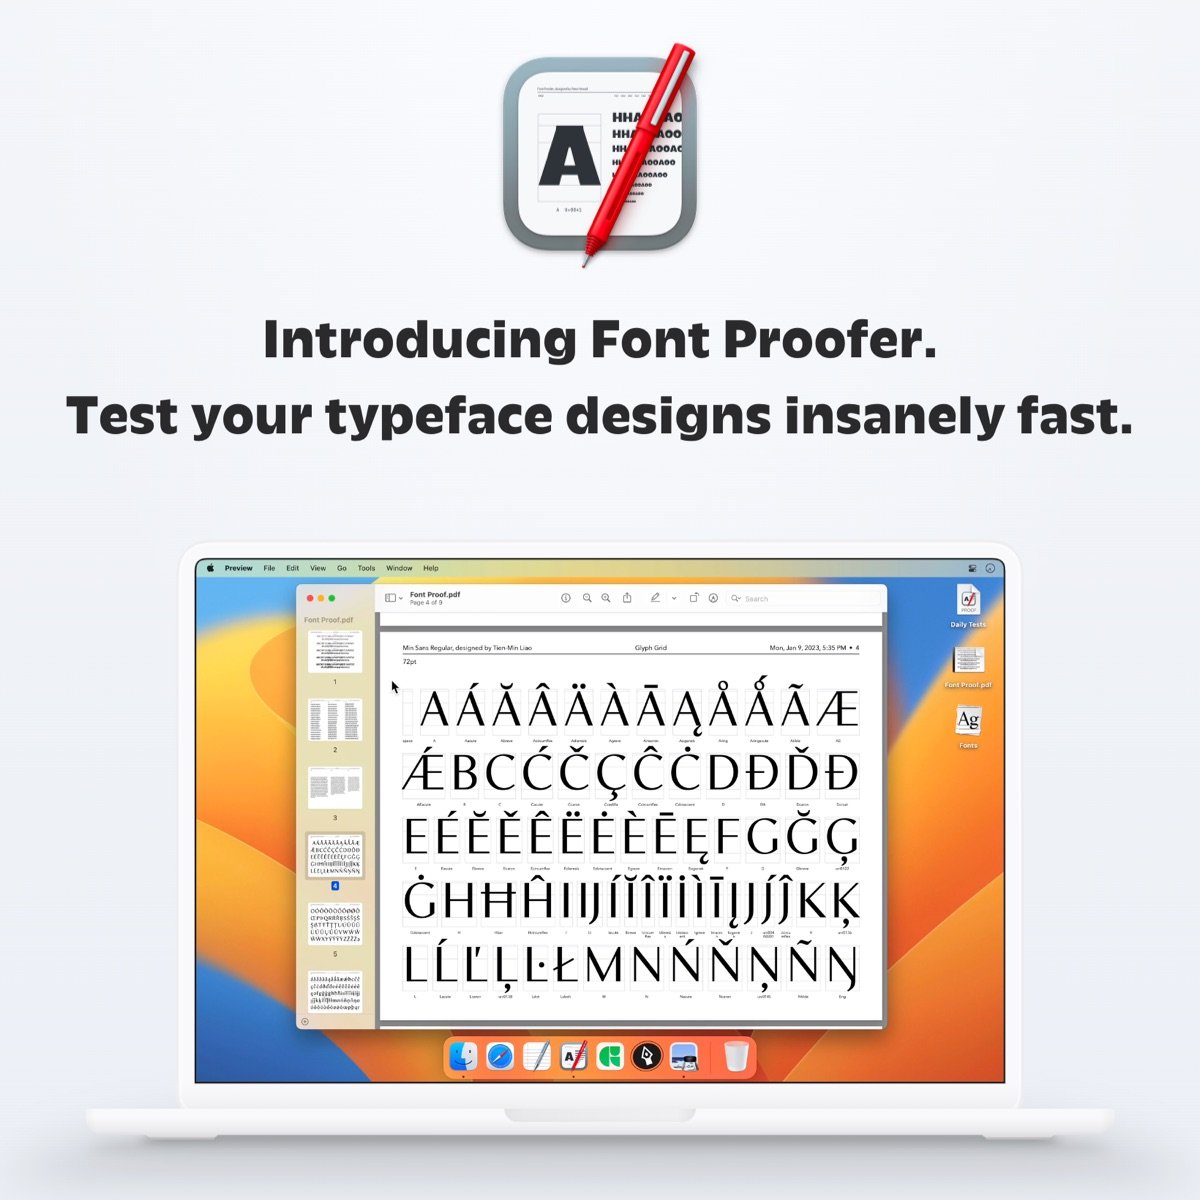 Font Proofer Website Intro.jpg